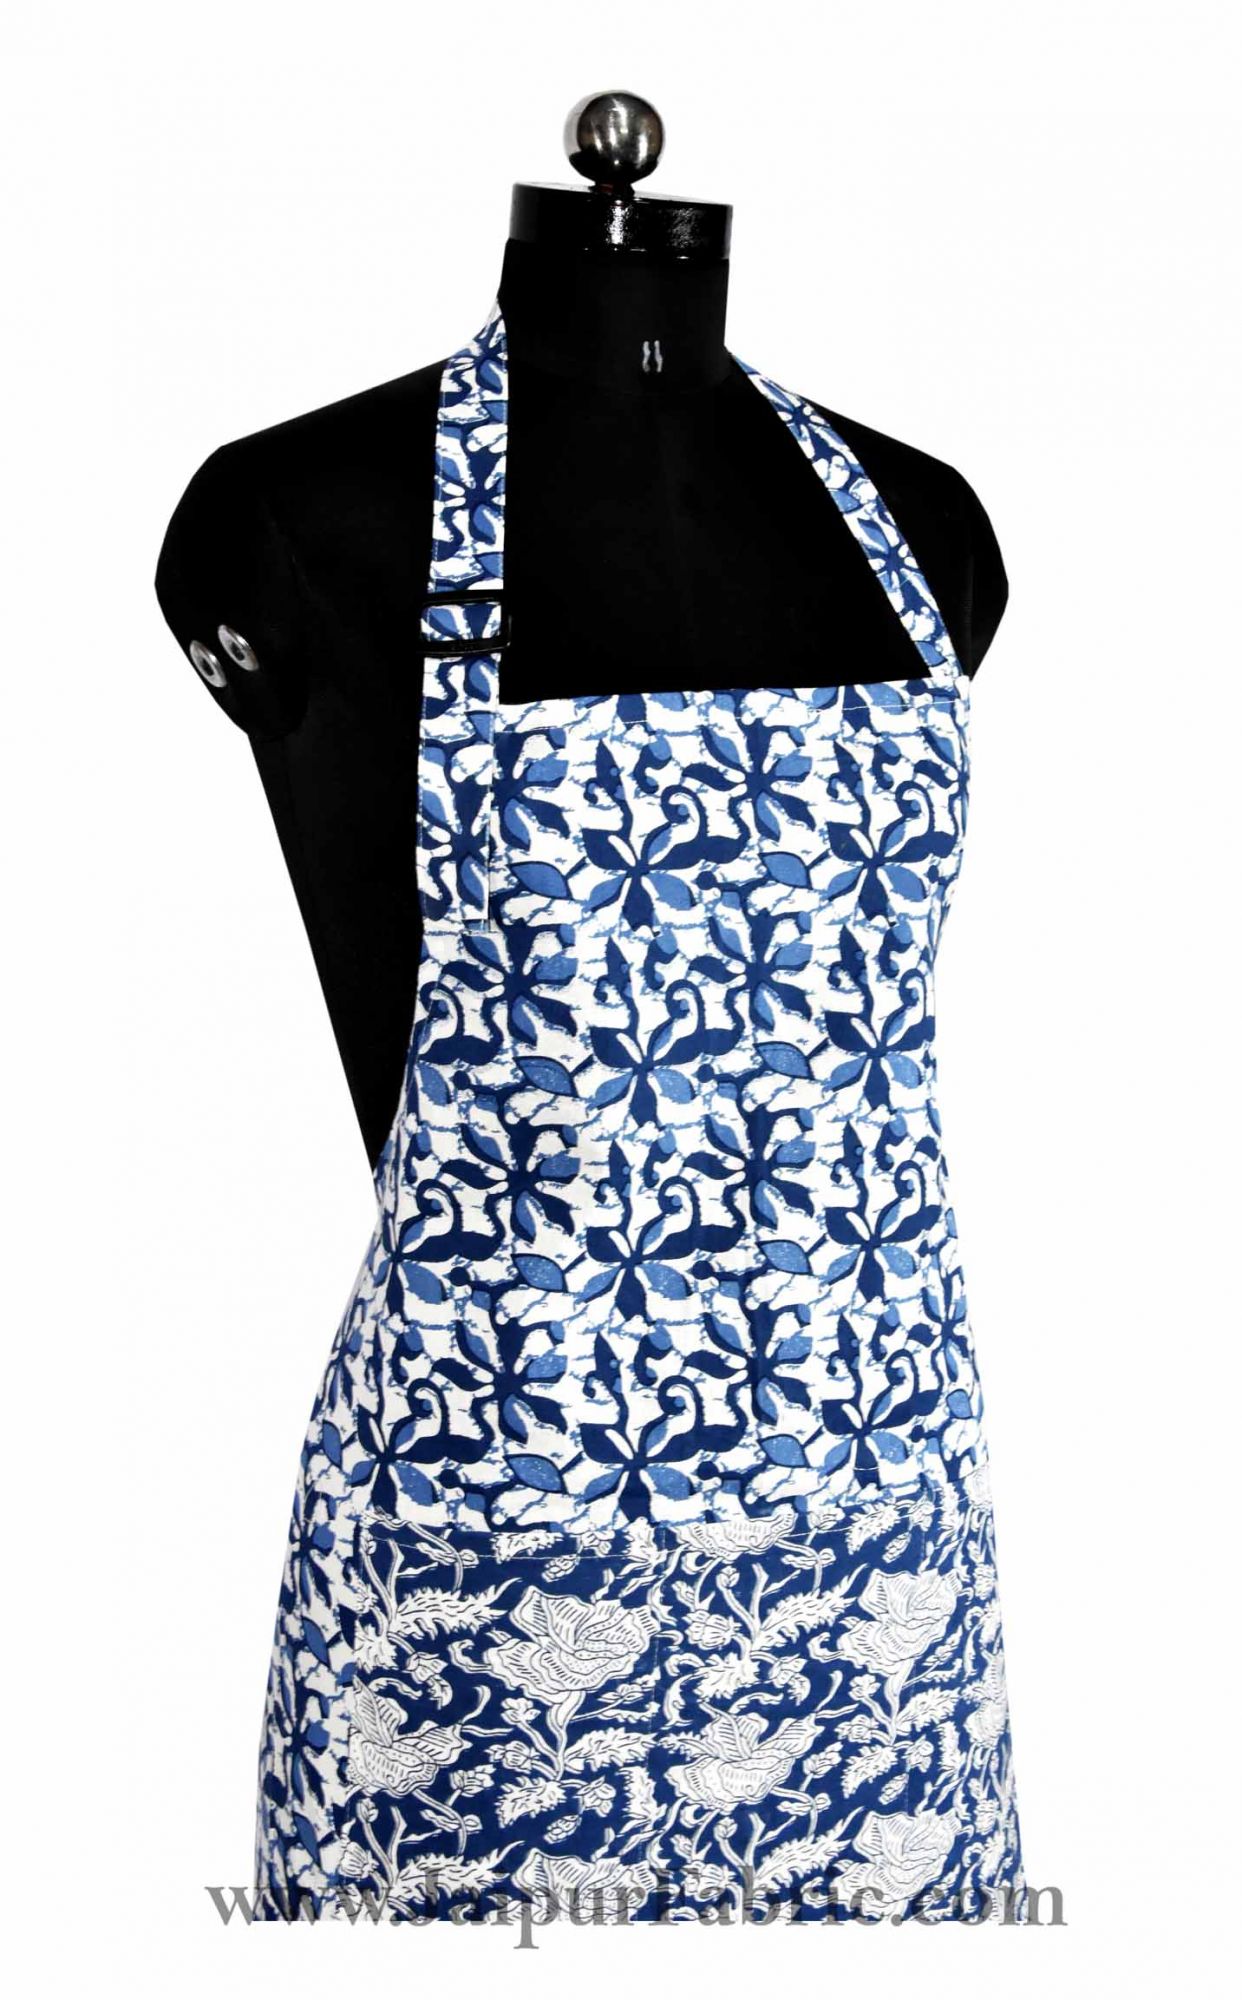 Batik print blue apron